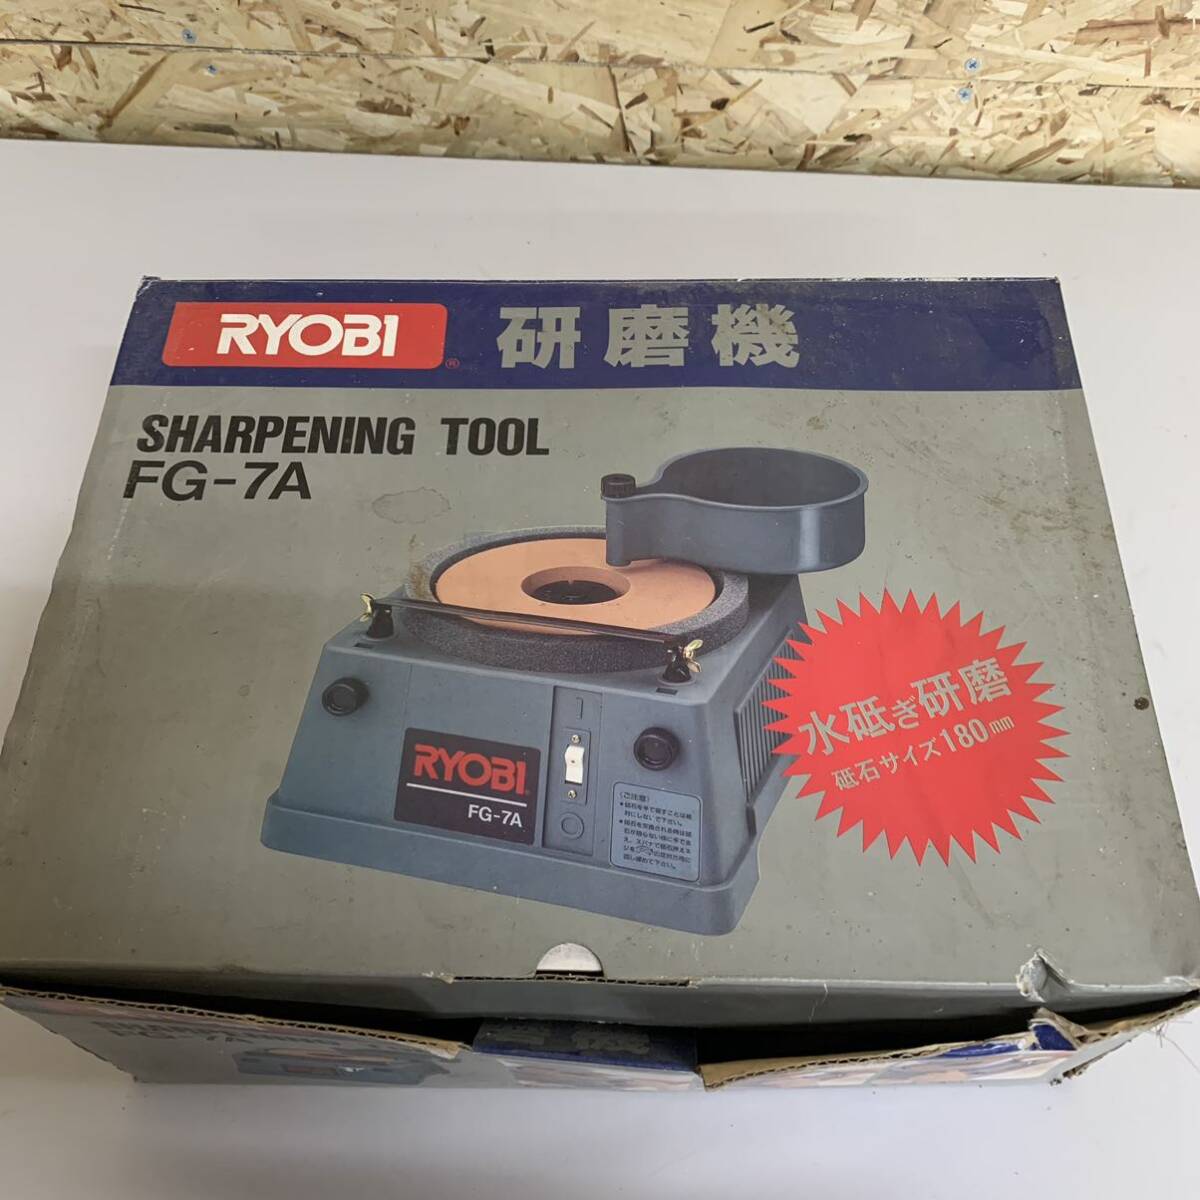  grinder RYOBI Ryobi FG-7A cutlery grinder power tool N93